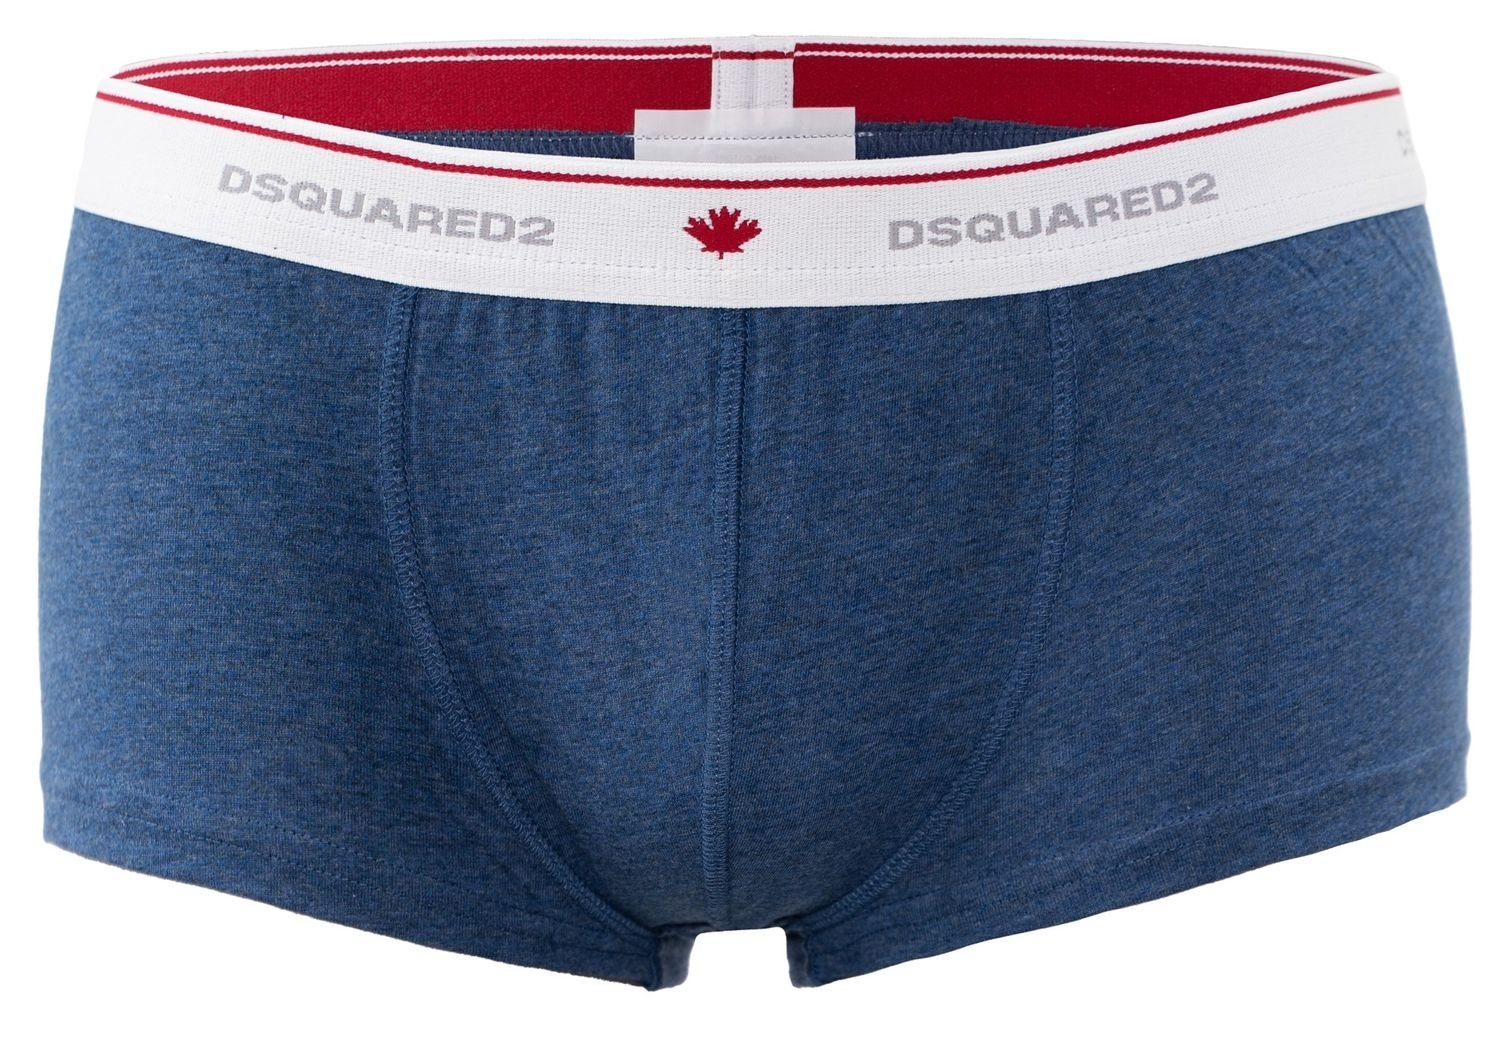 Dsquared2 Trunk Boxer / / Boxershorts (1-St) in XXL / Dsquared2 Shorts / L Pants XL Größe / M / blau